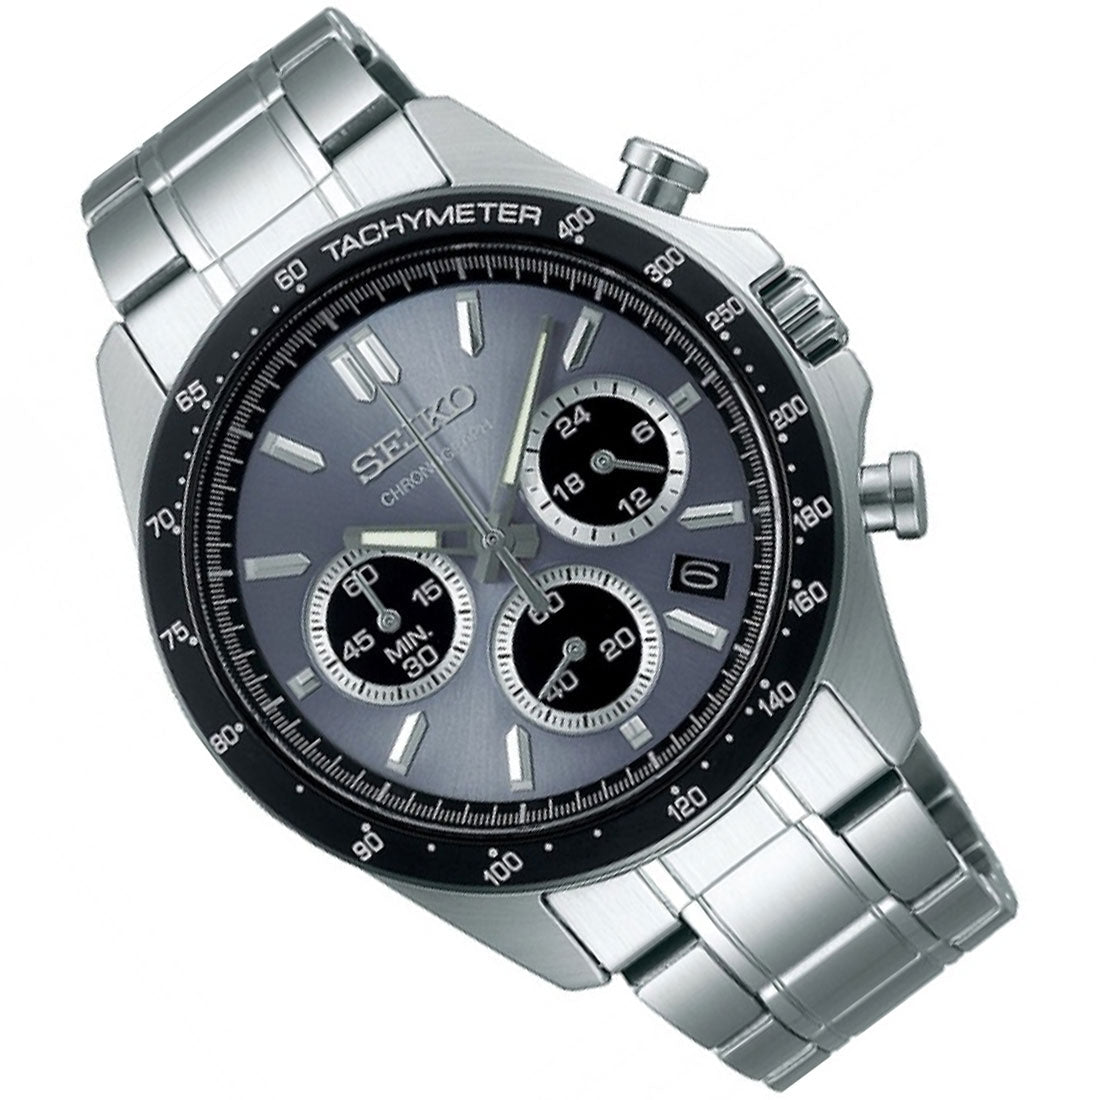 Seiko Spirit SBTR027 JDM Selection Grey Dial Chronograph Quartz Stainless Steel Watch -Seiko